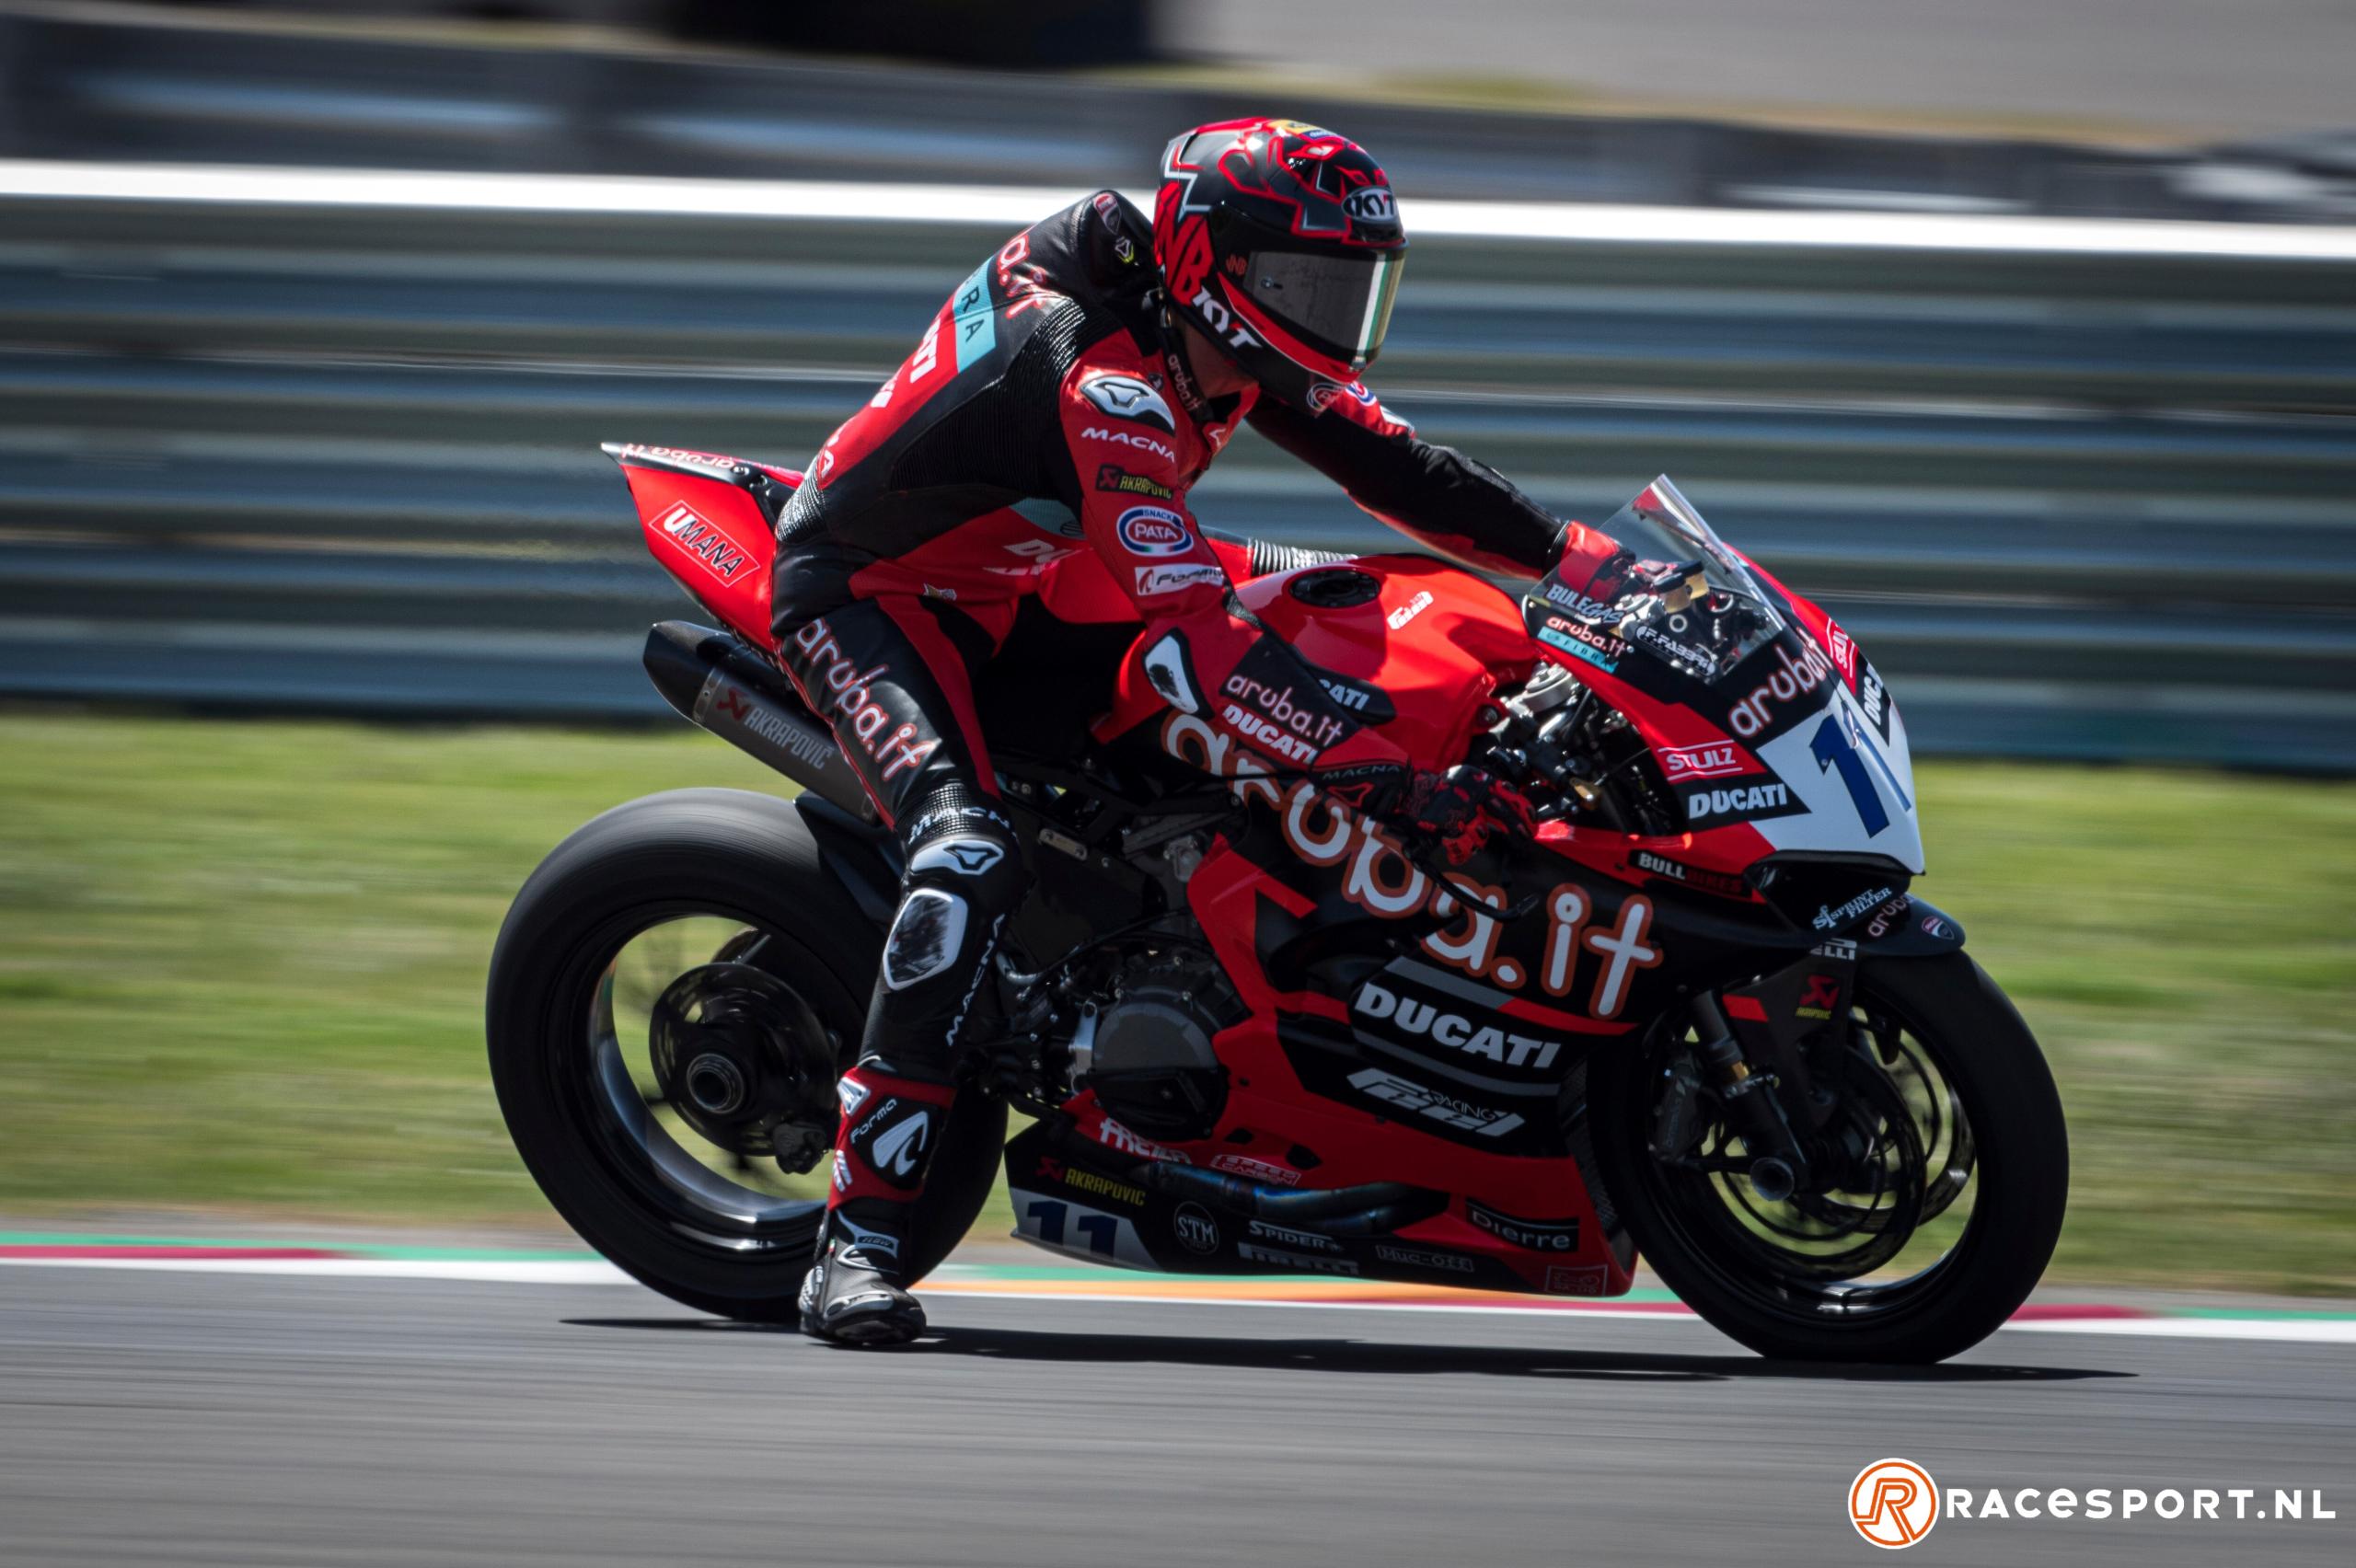 Bulega Ducati memimpin tiga besar setelah hari pertama di Indonesia, sedangkan Van Straalen ketujuh